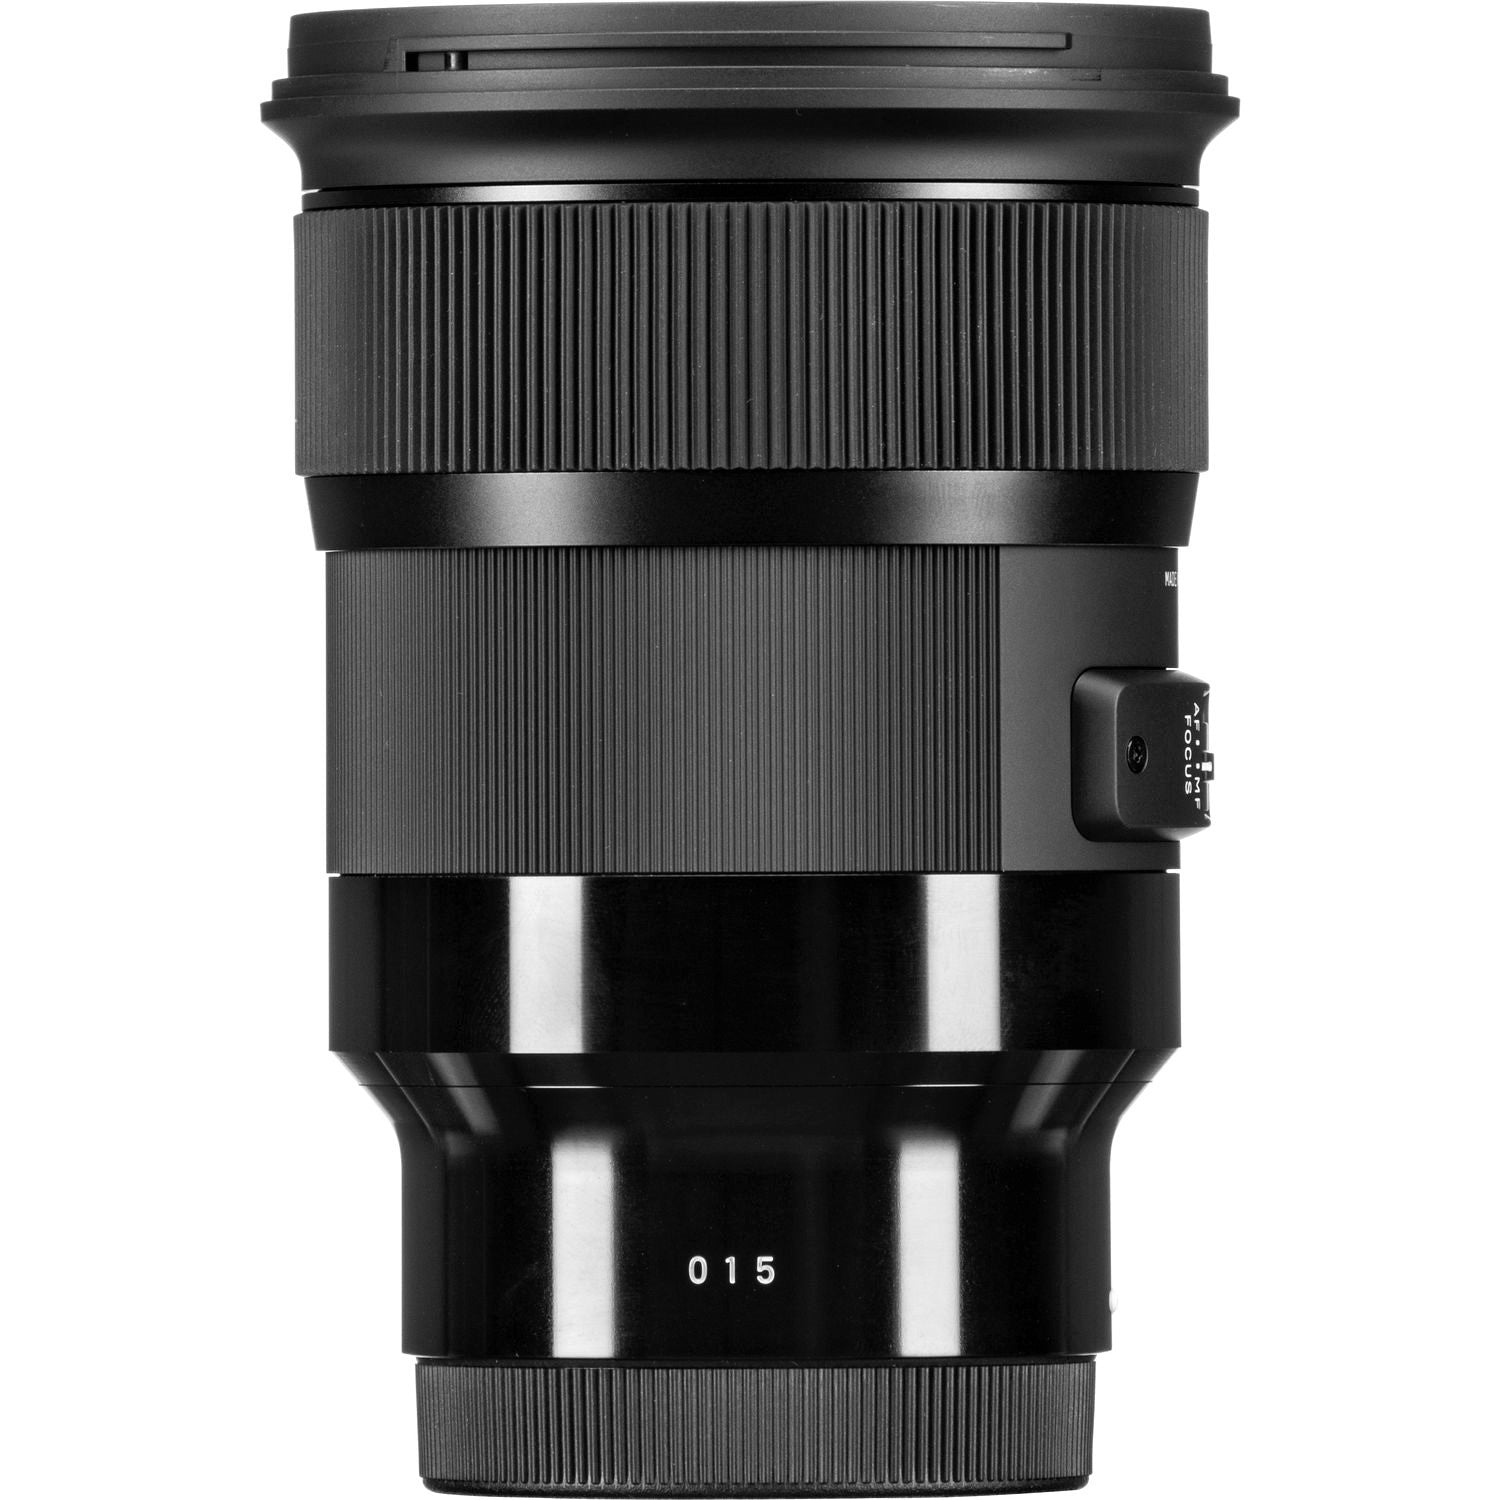 Sigma 24mm F1.4 DG HSM Art Lens for Sony E